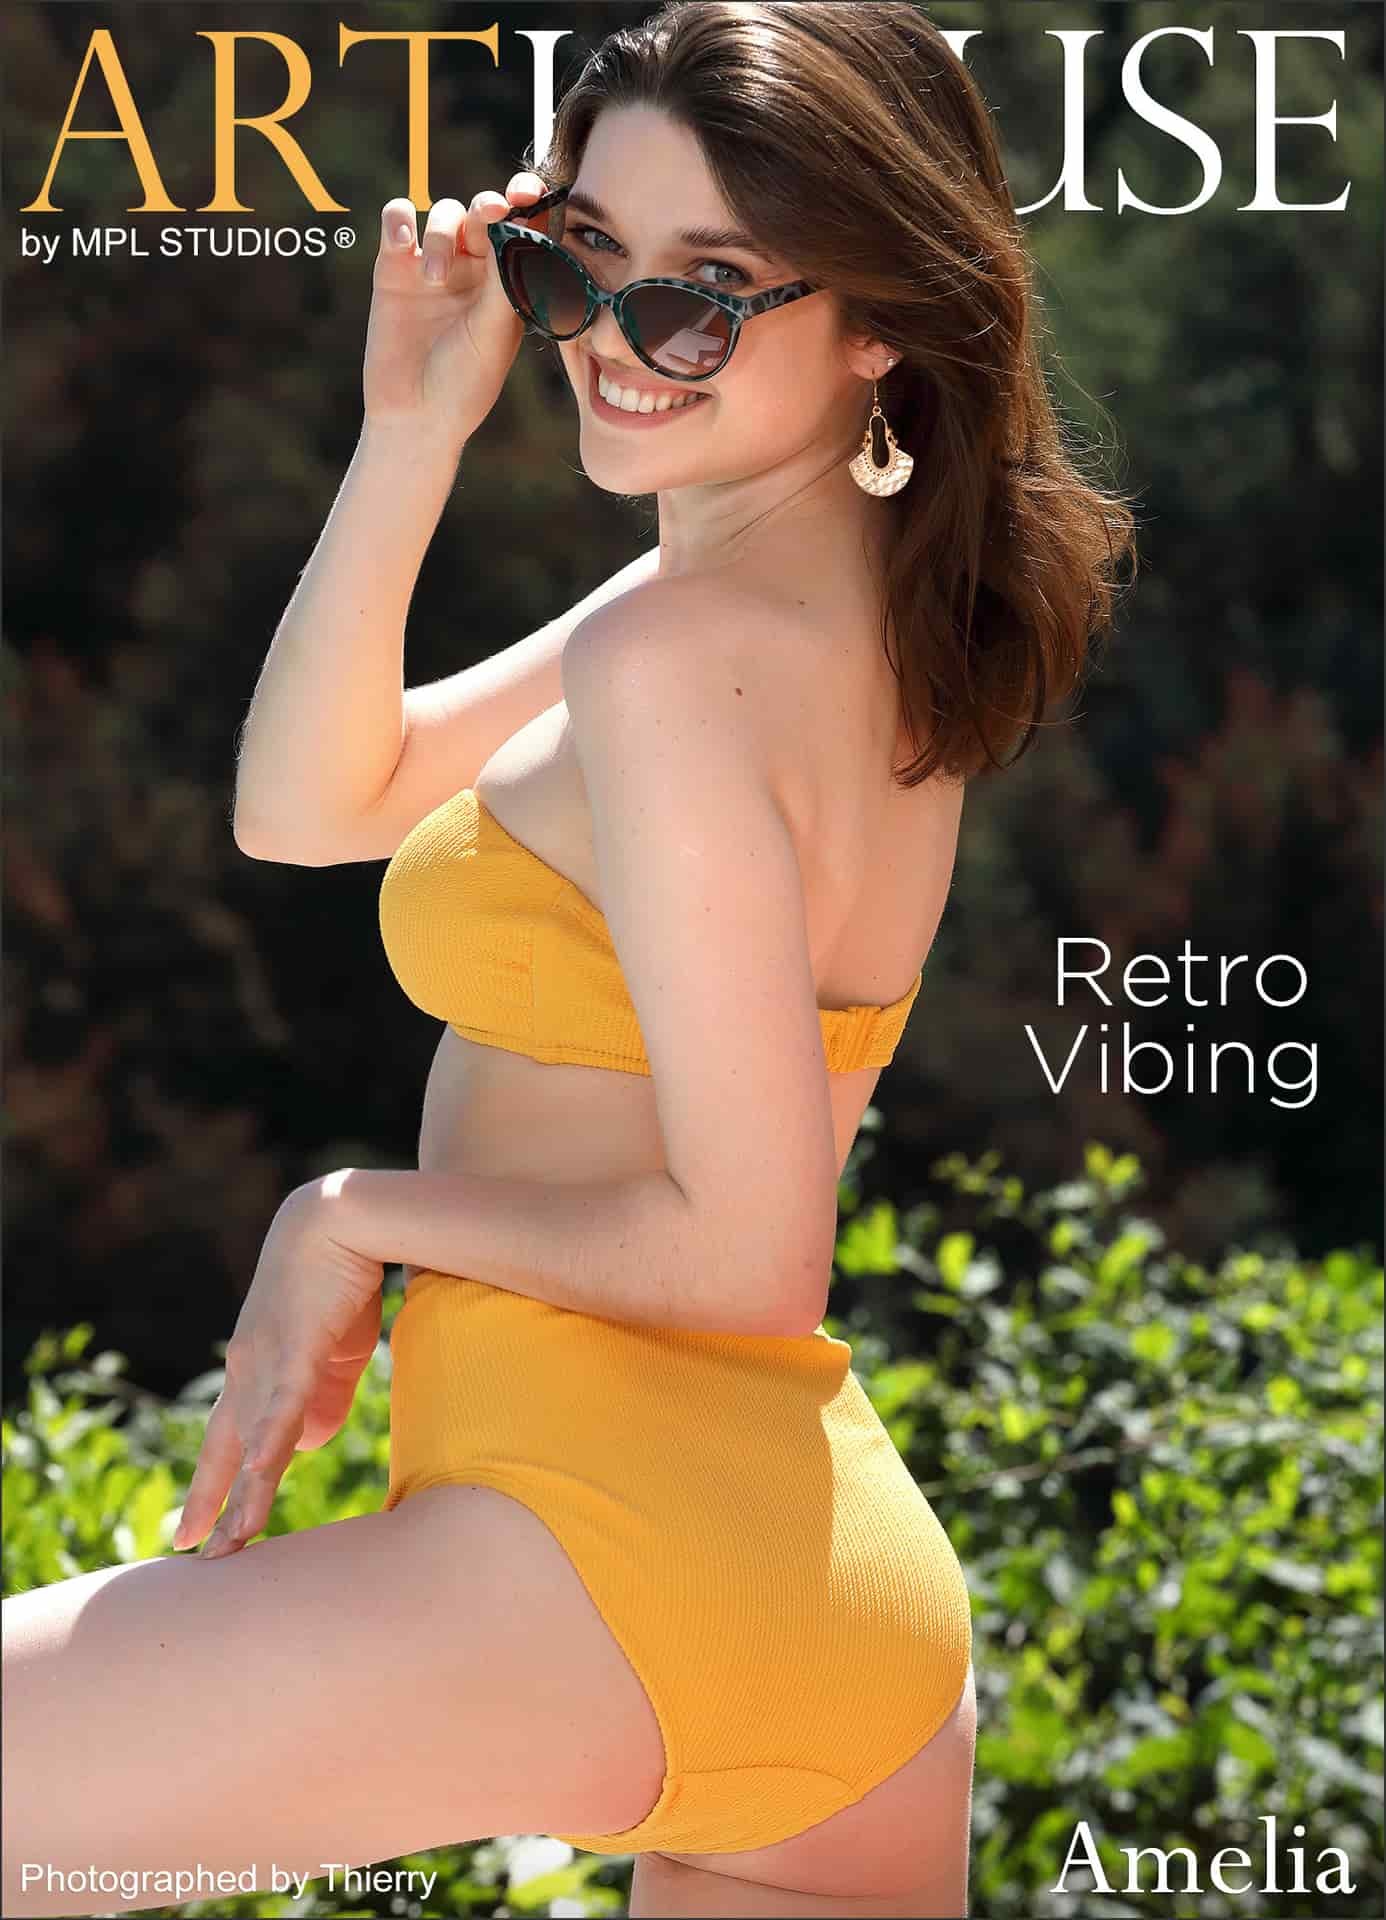 プールサイドで黄色いビキニを脱ぐ女の子 - Amelia - Retro Vibing